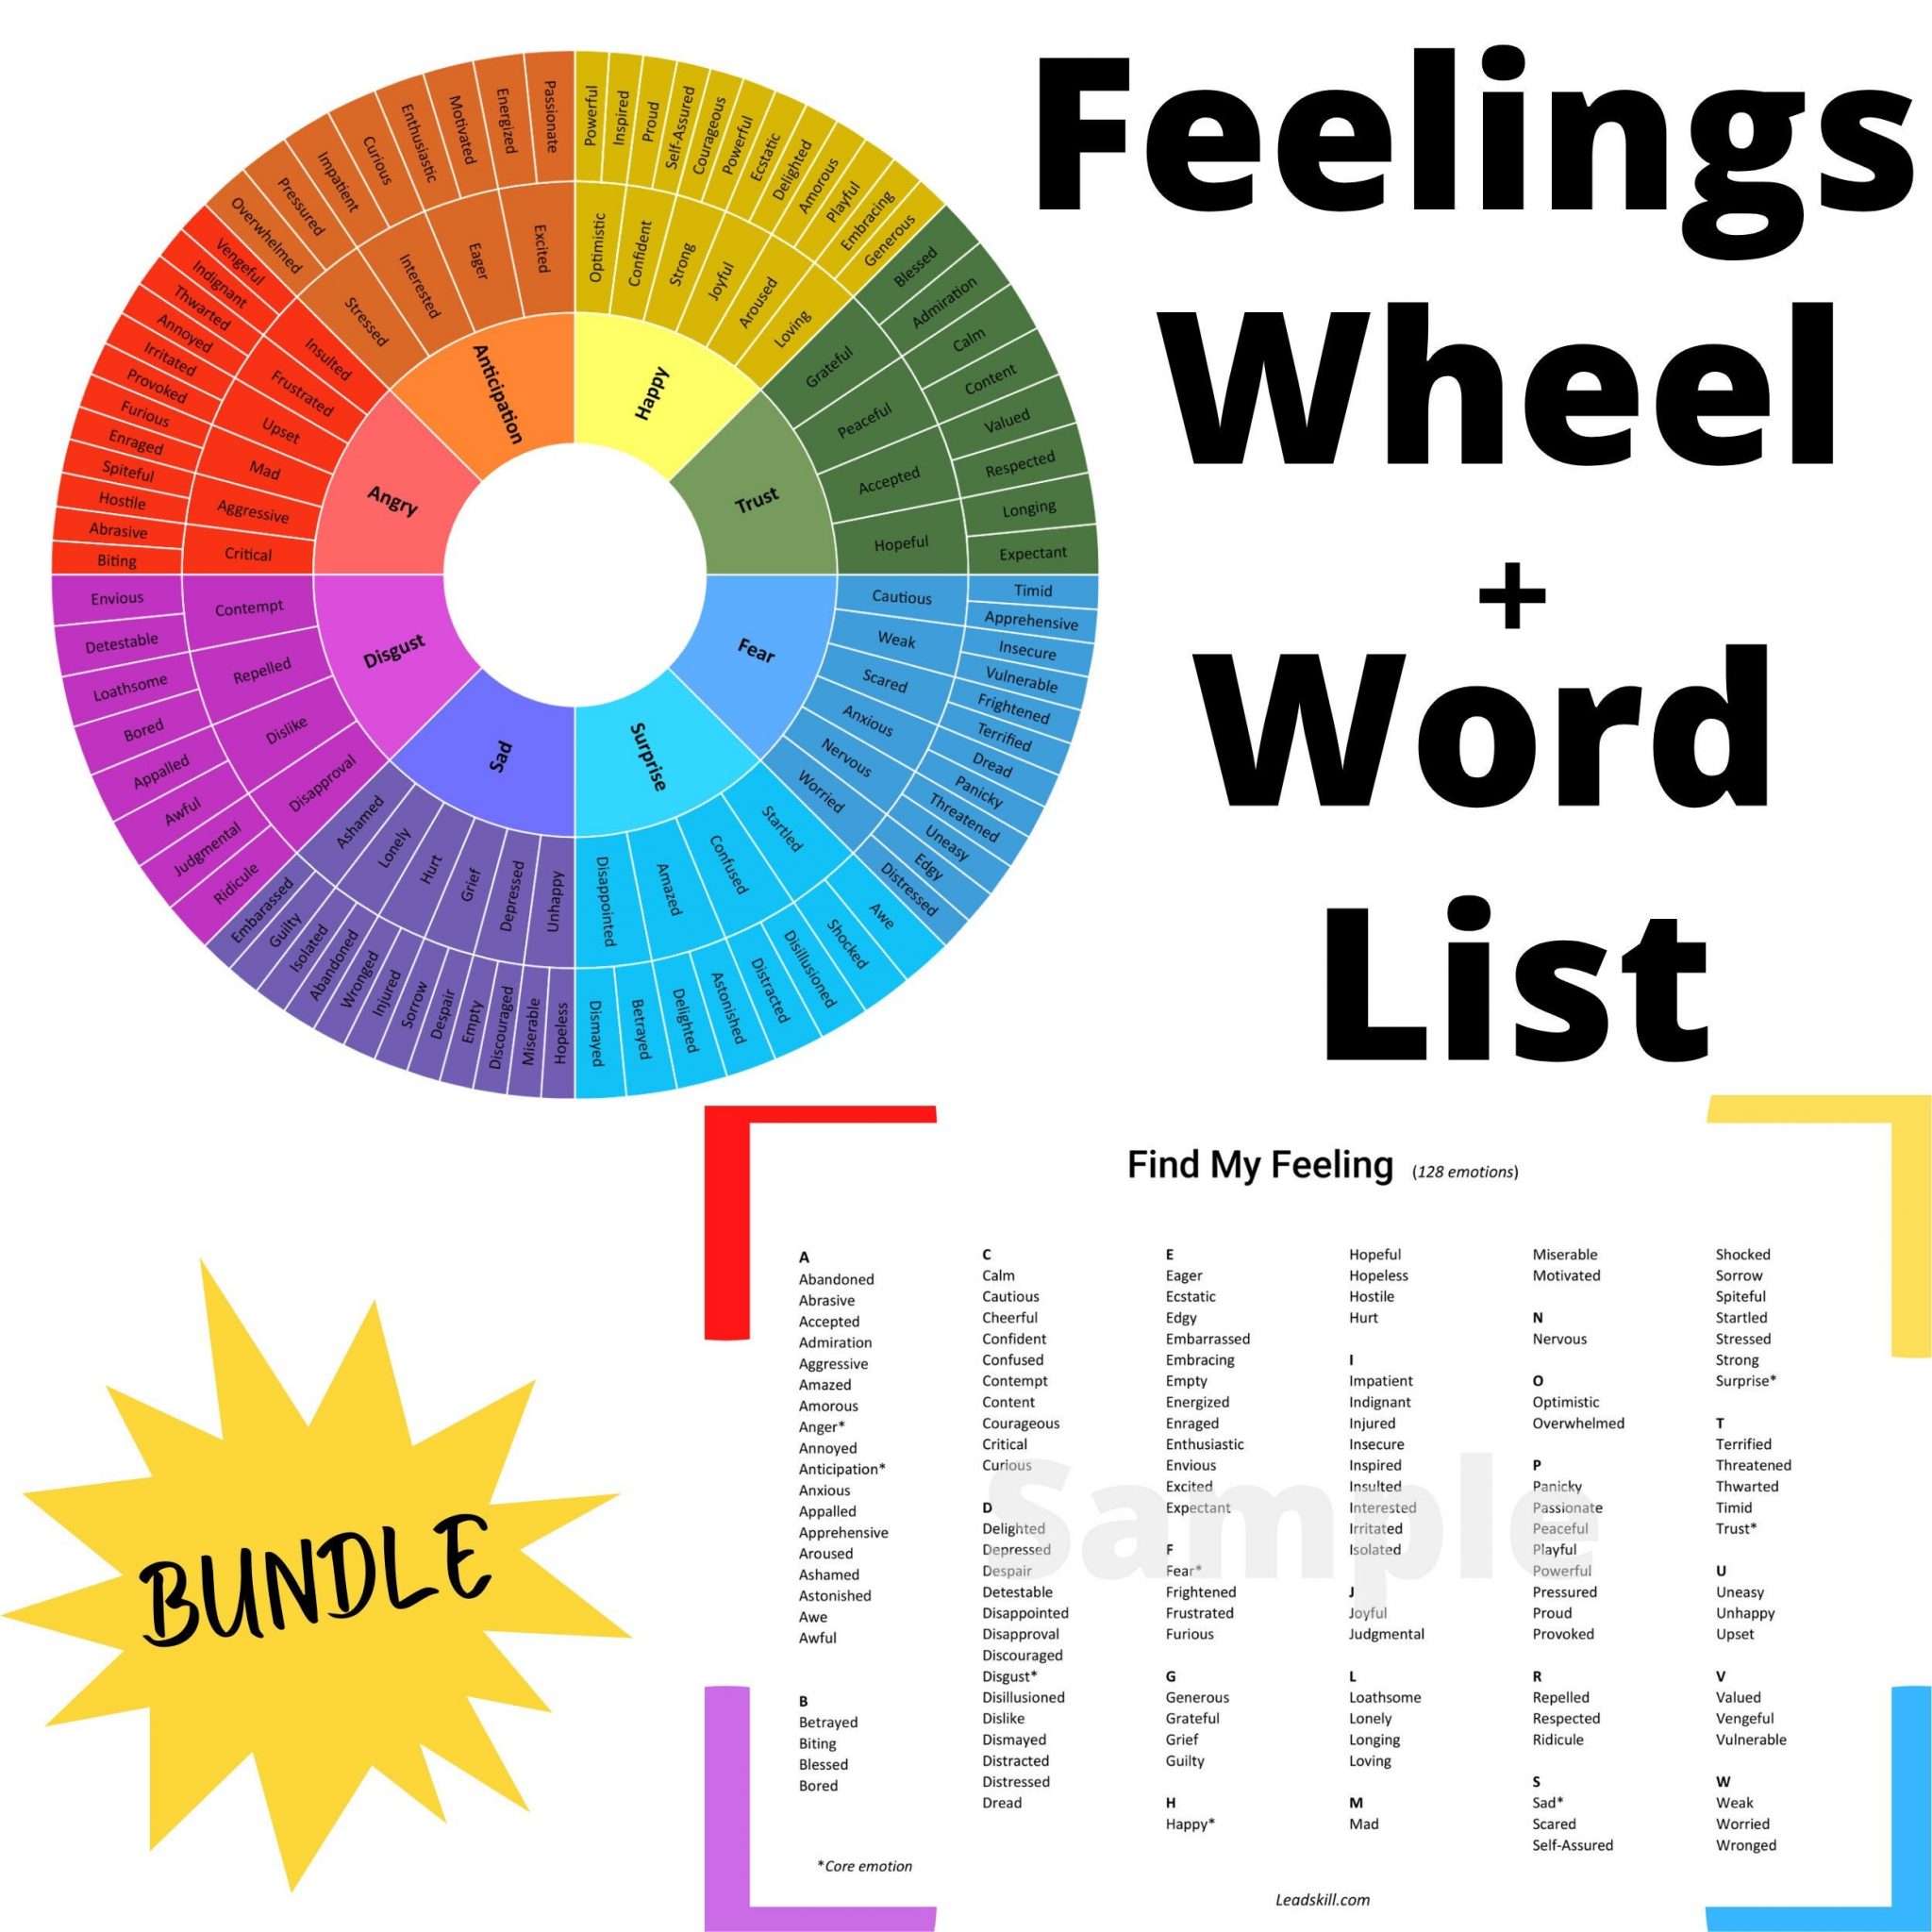 emotions-wheel-feelings-word-list-128-emotions-digital-download